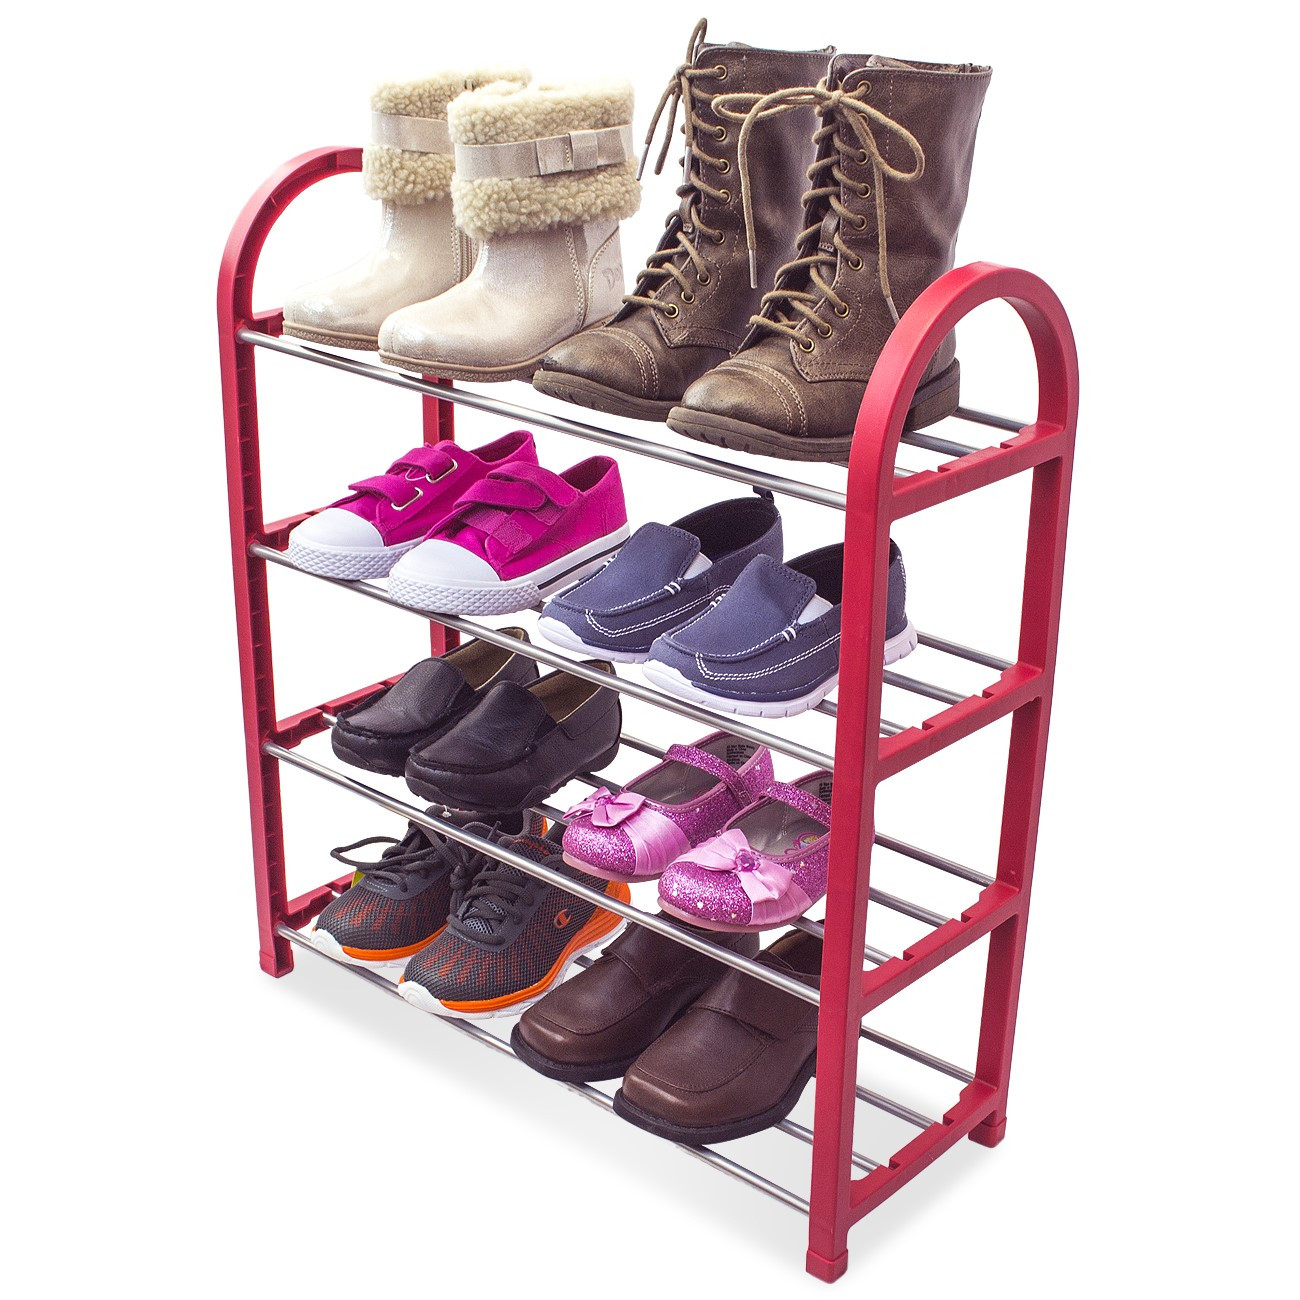 Childrens Shoe Storage
 Sorbus Kid s Shoe Rack Junior Organizer Storage 4 Levels